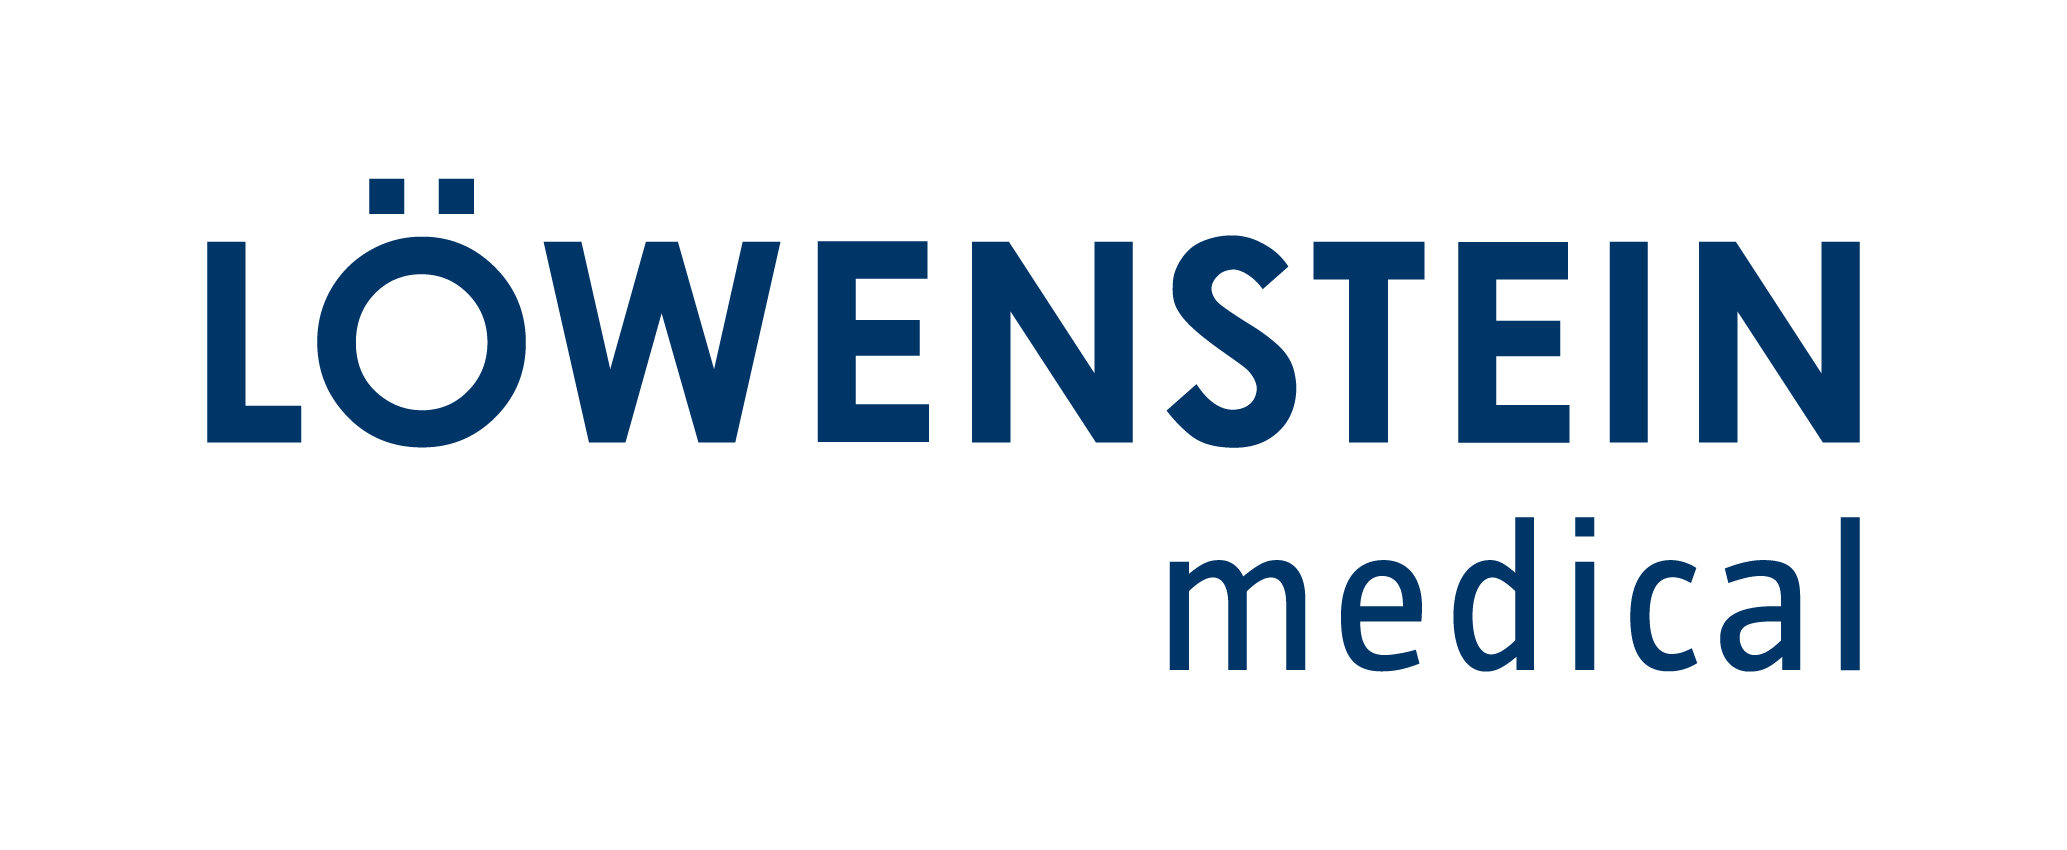 Welcome - Löwenstein Medical Technology